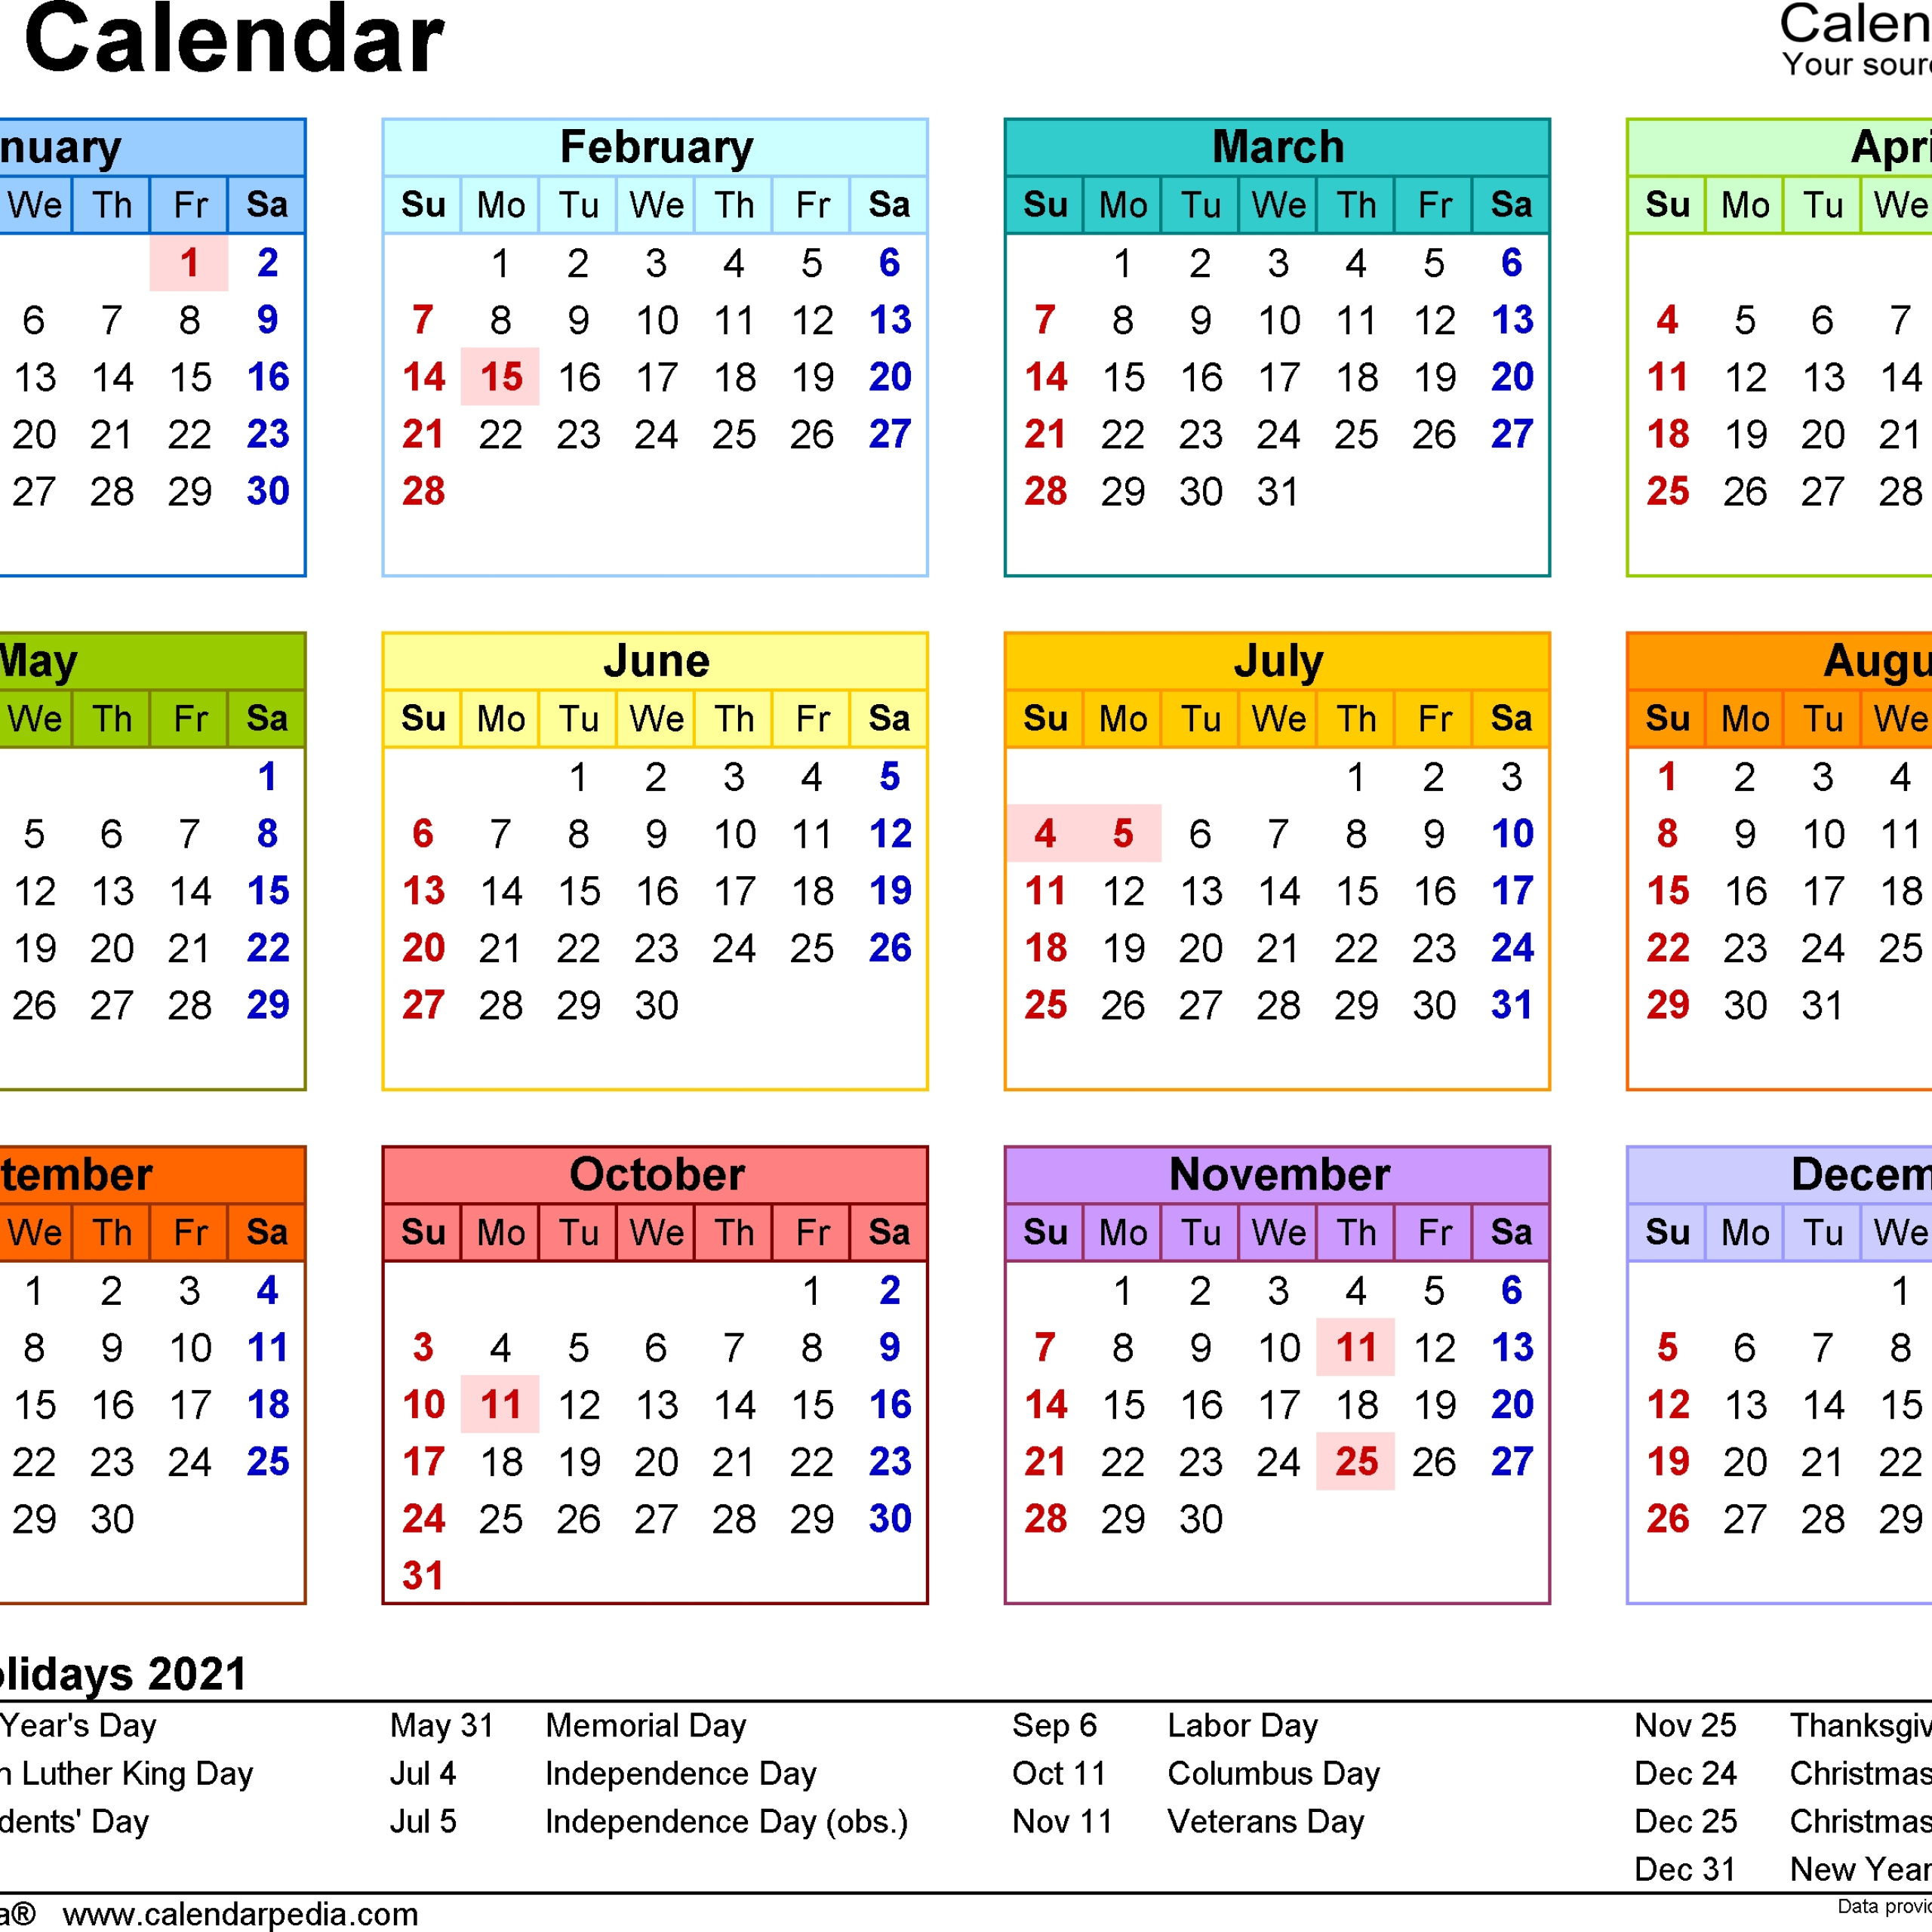 2021 Weekly Calendar Excel Free Avnitasoni